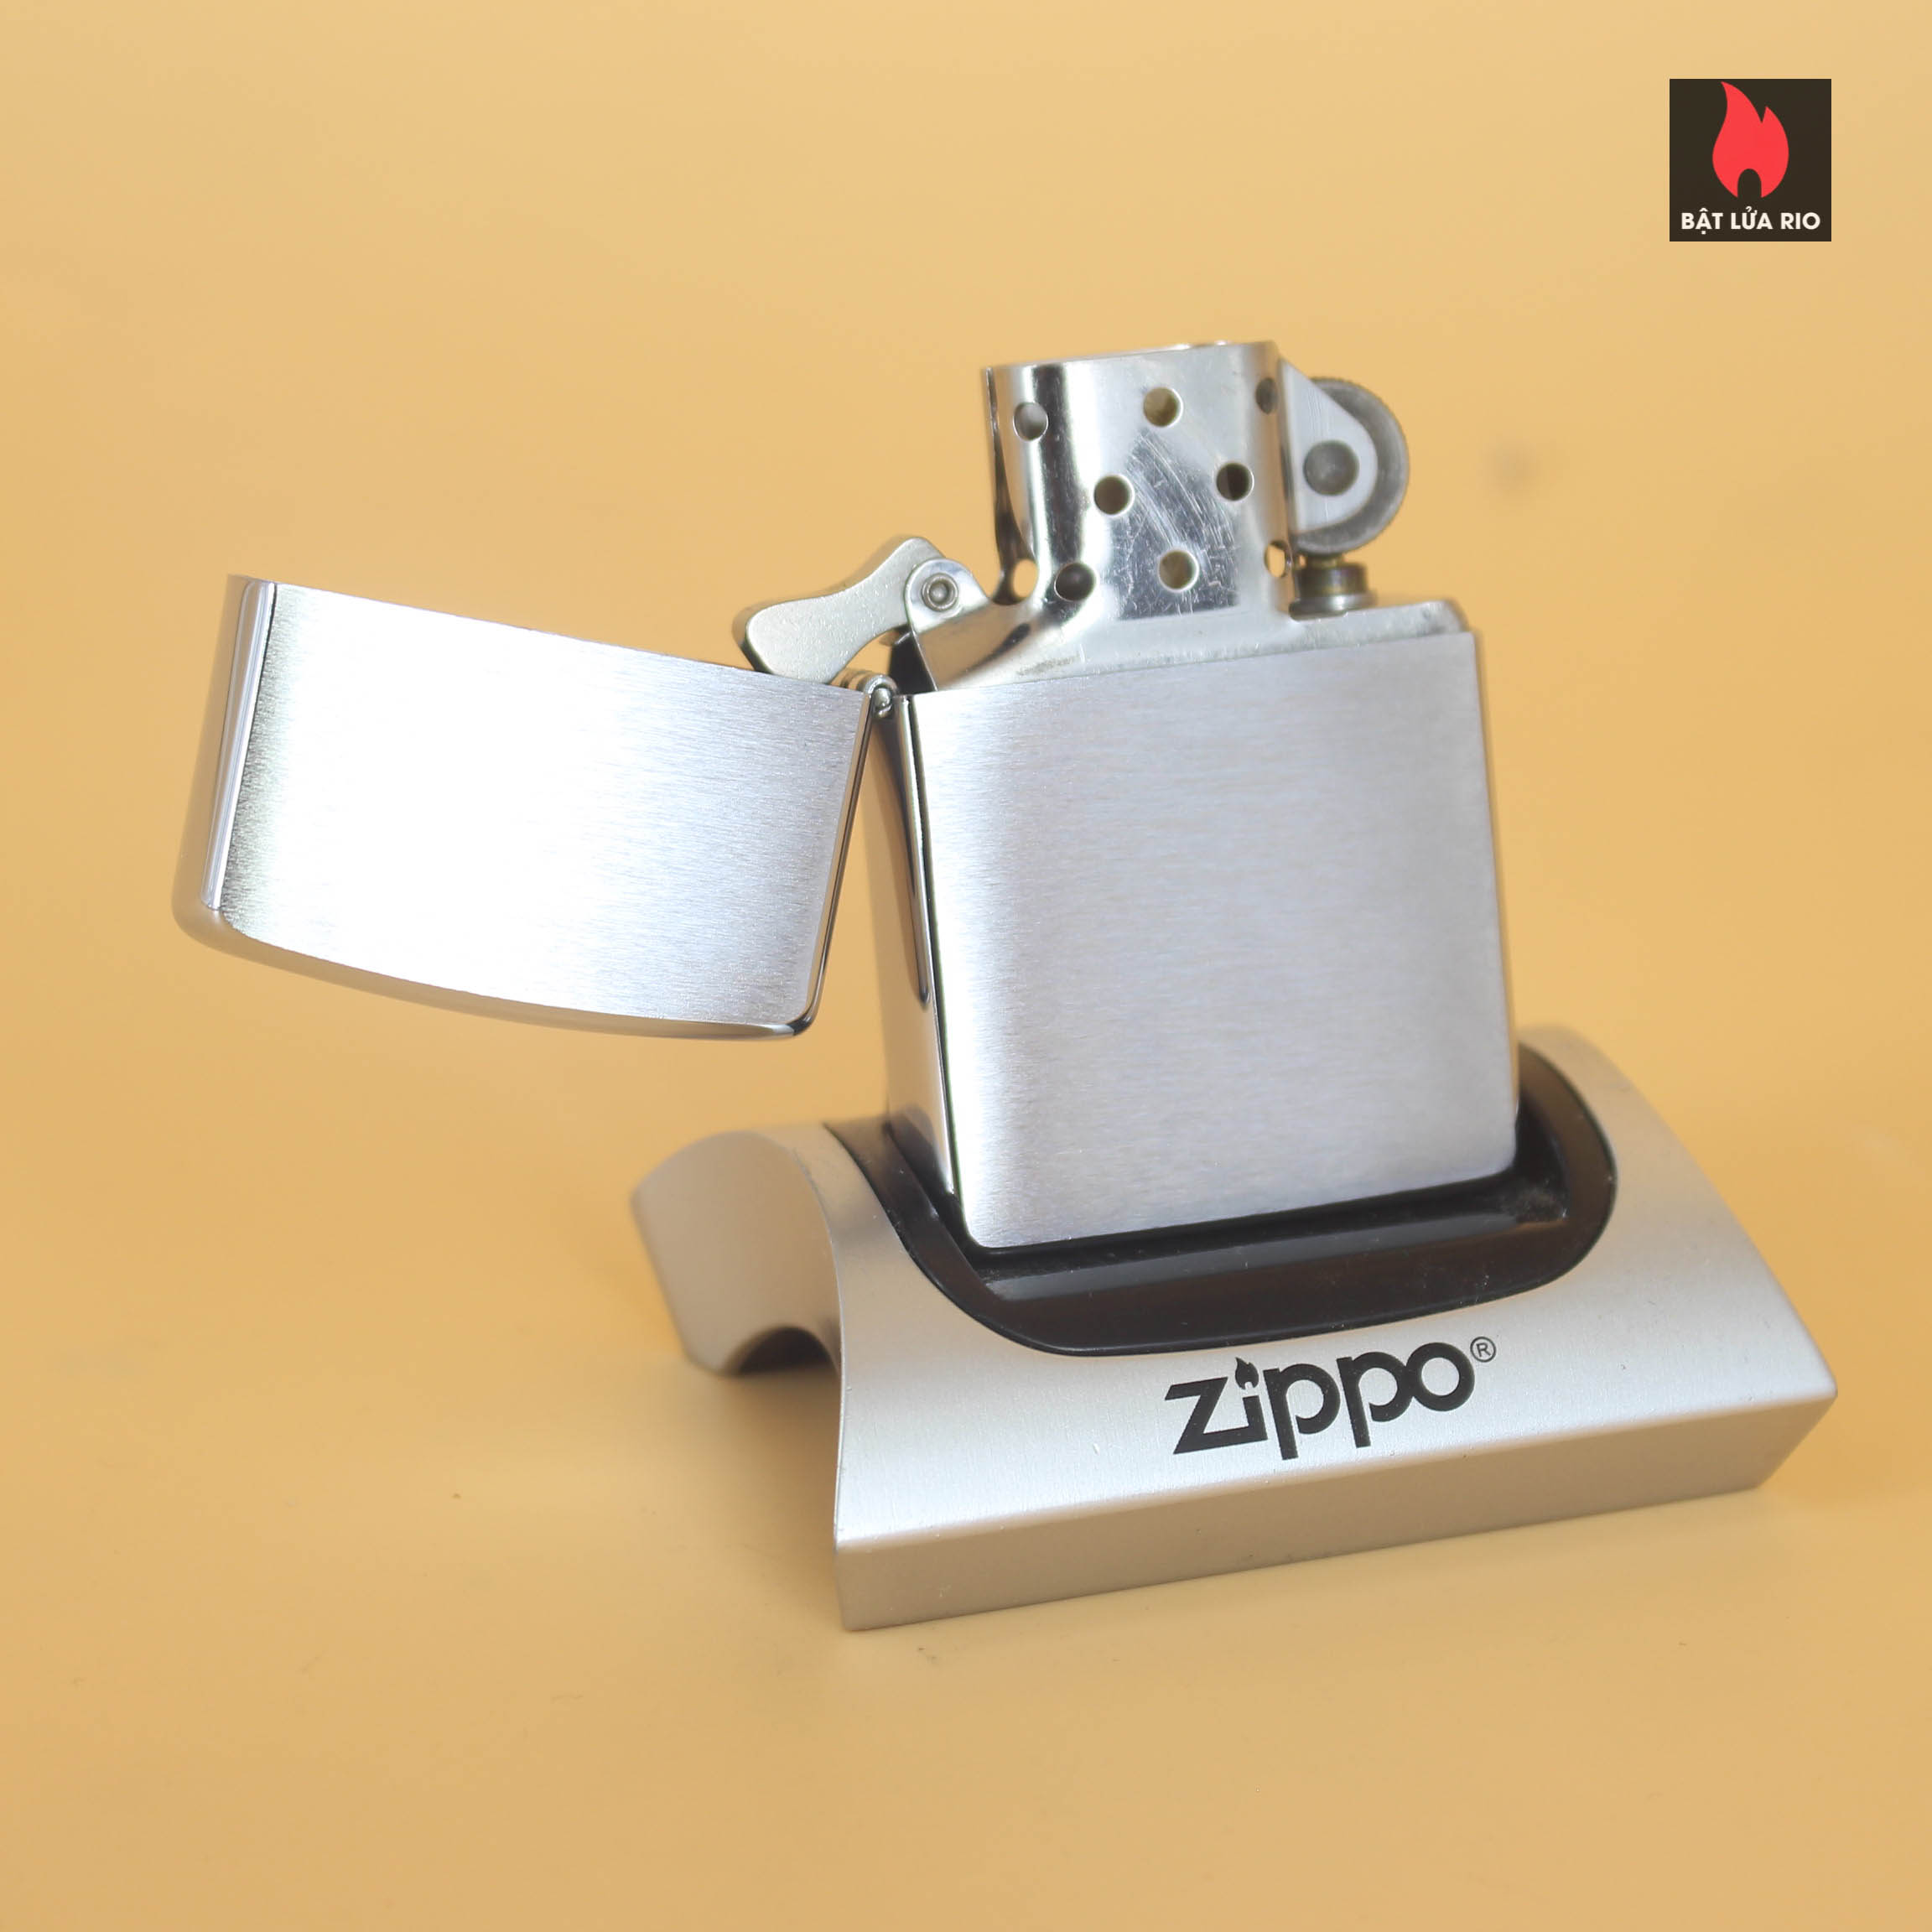 Zippo La Mã 1995 – Trơn 2 Mặt – Brushed Chrome 1